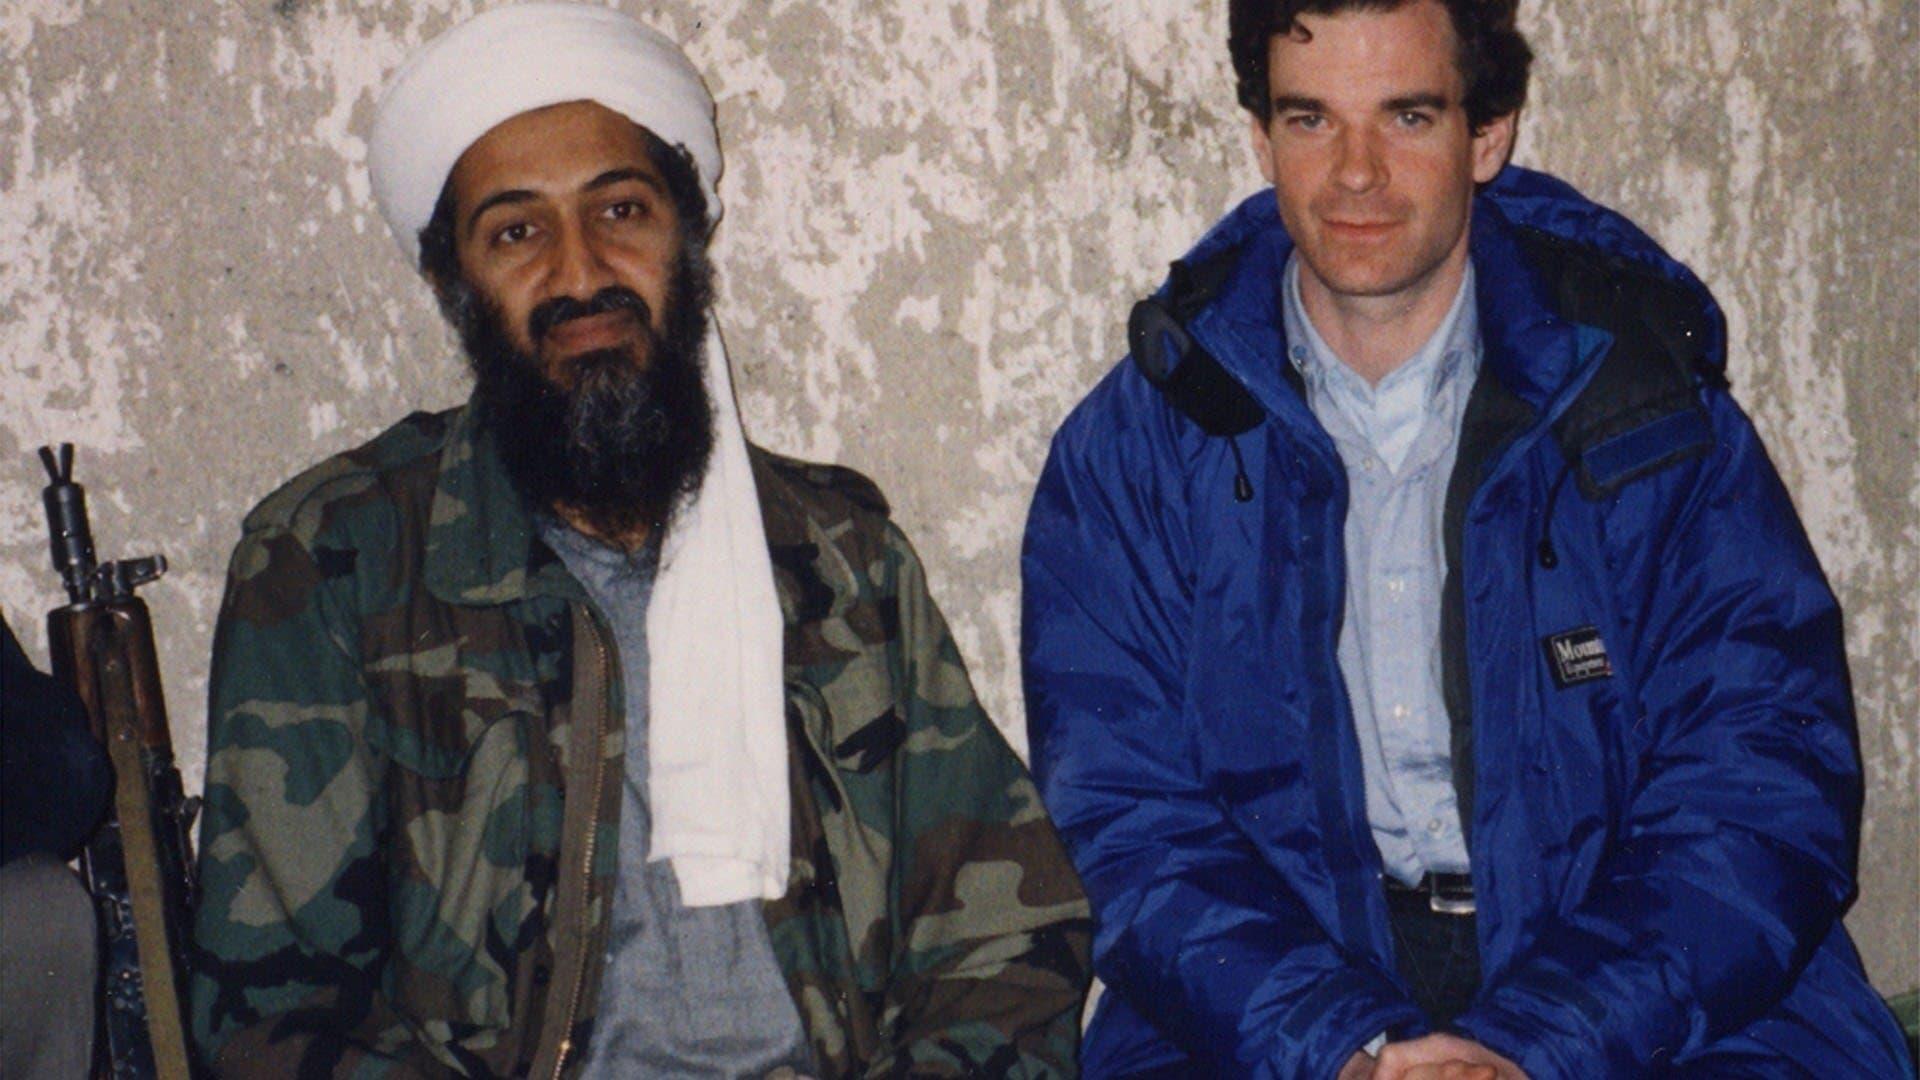 Watch 60 Minutes Season 44 Episode 51: Killing bin Laden - Full show on CBS